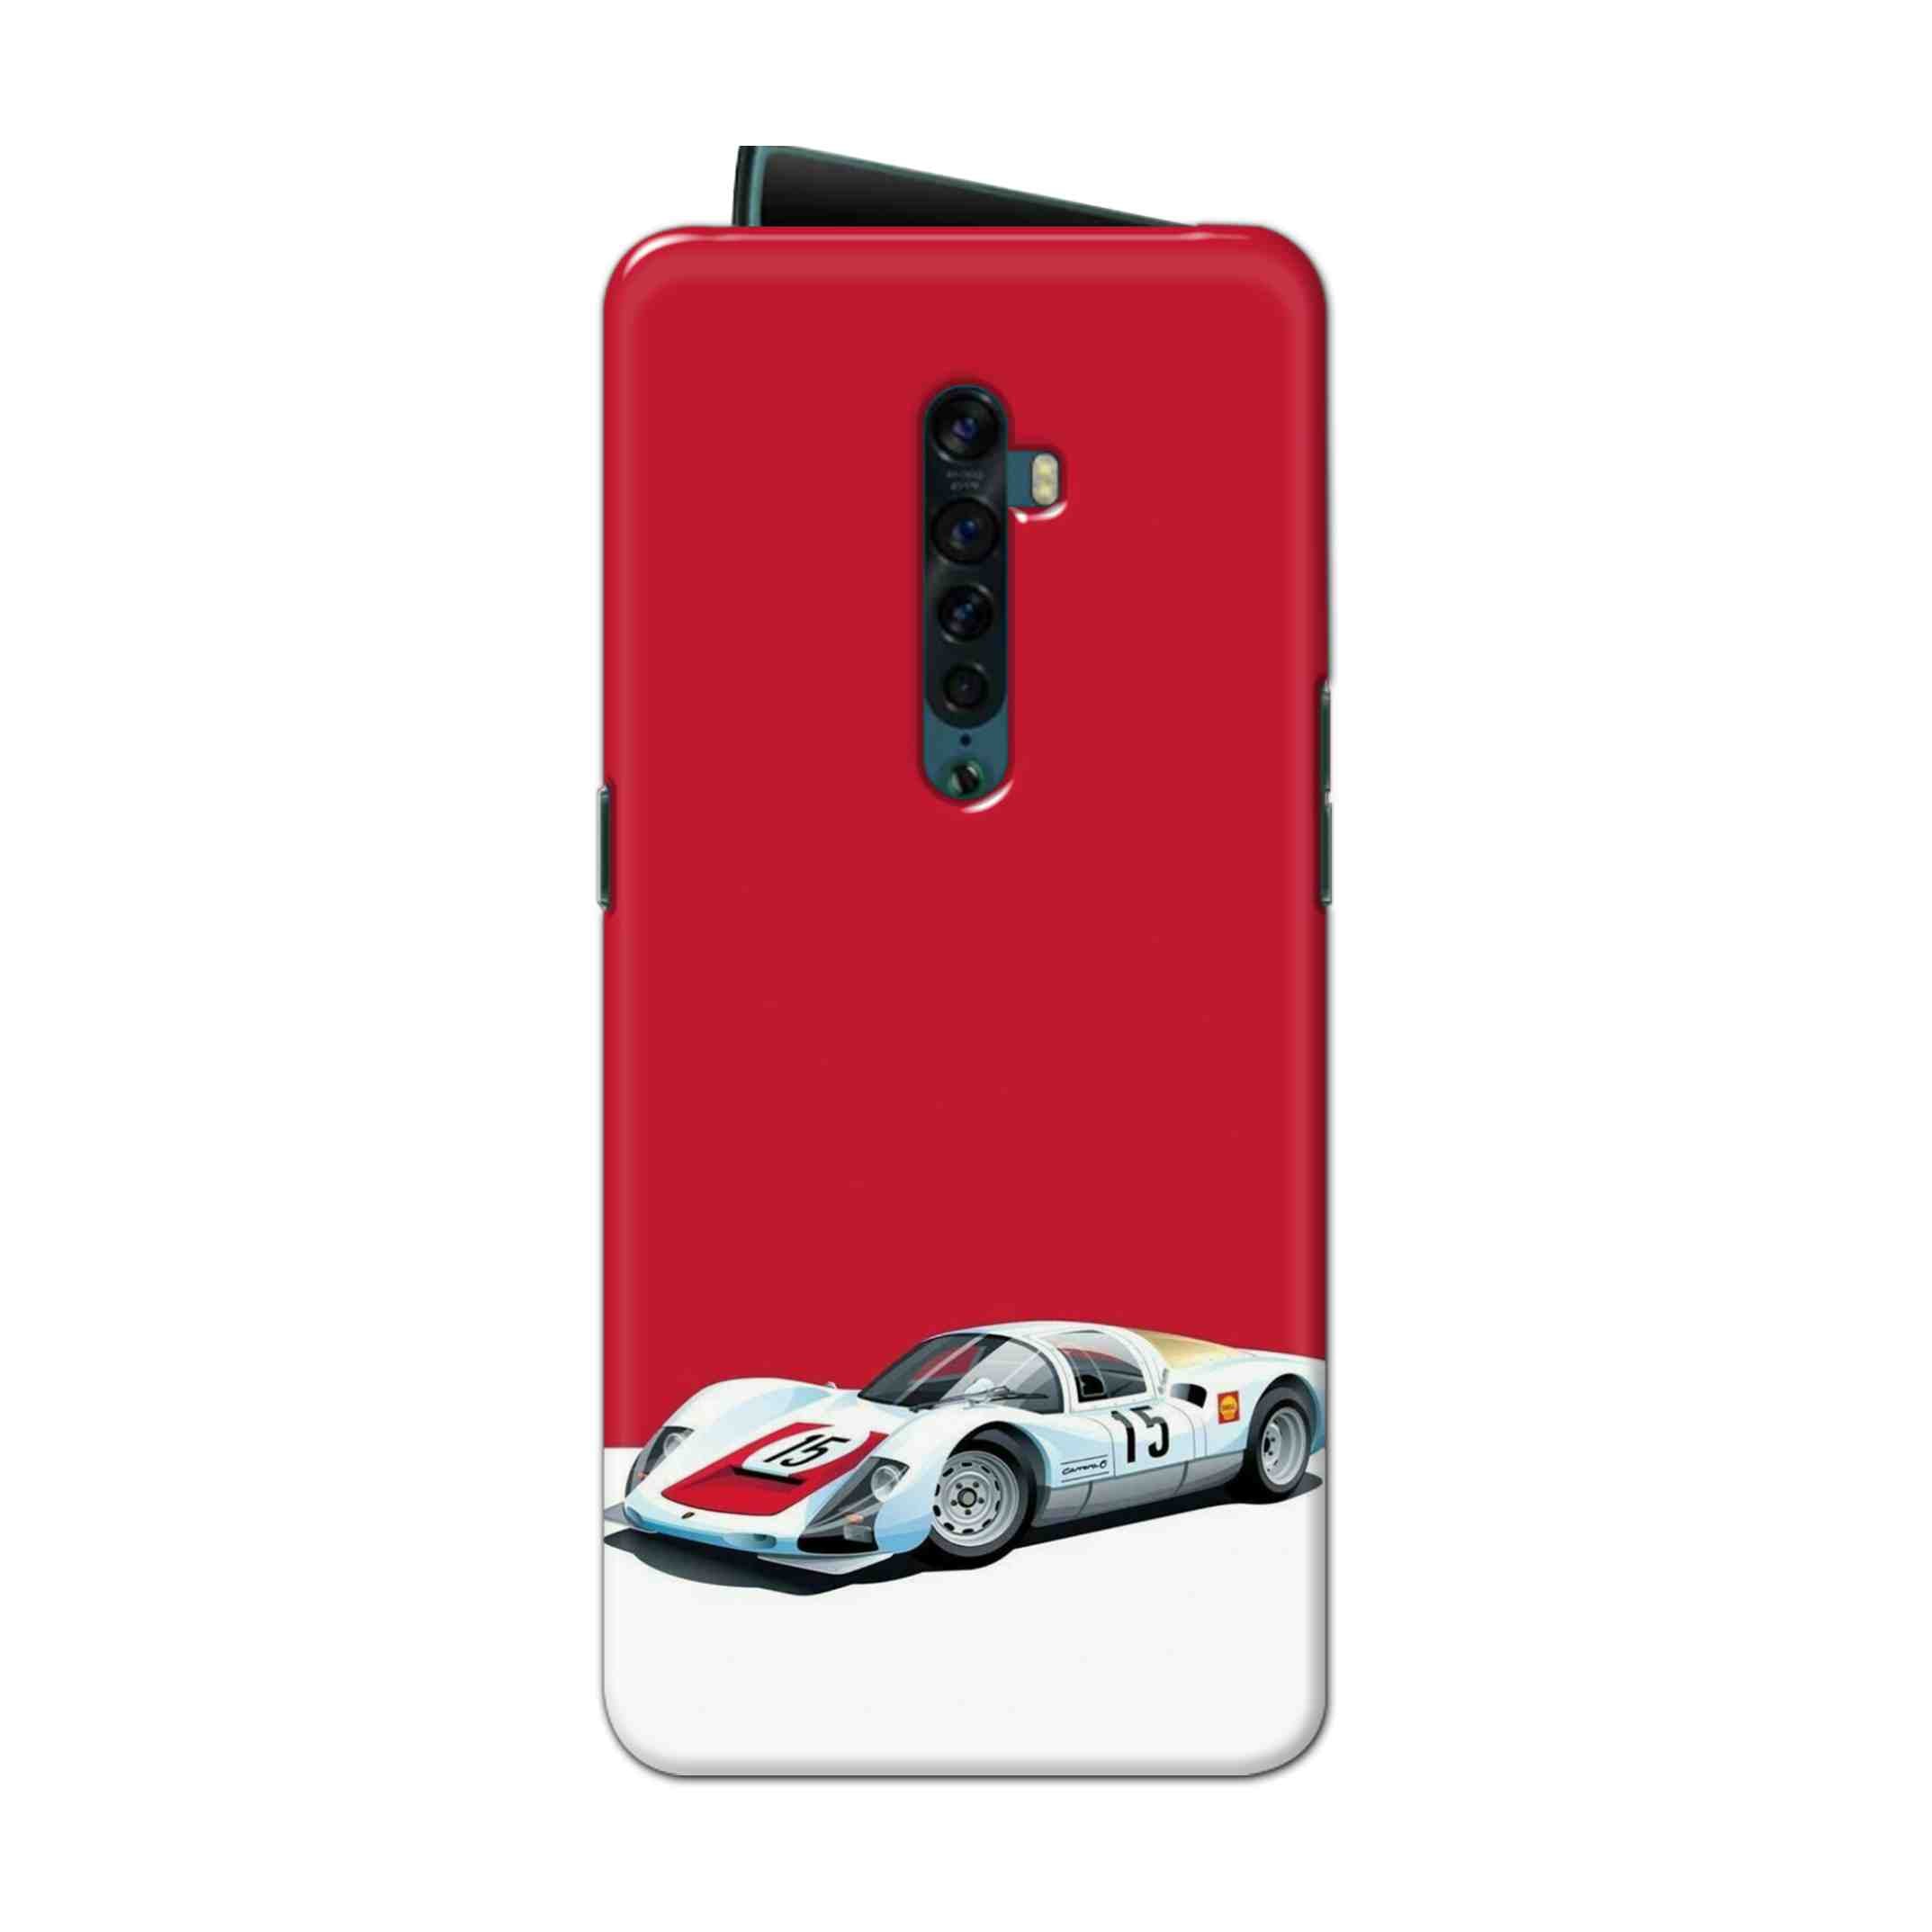 Buy Ferrari F15 Hard Back Mobile Phone Case Cover For Oppo Reno 2 Online